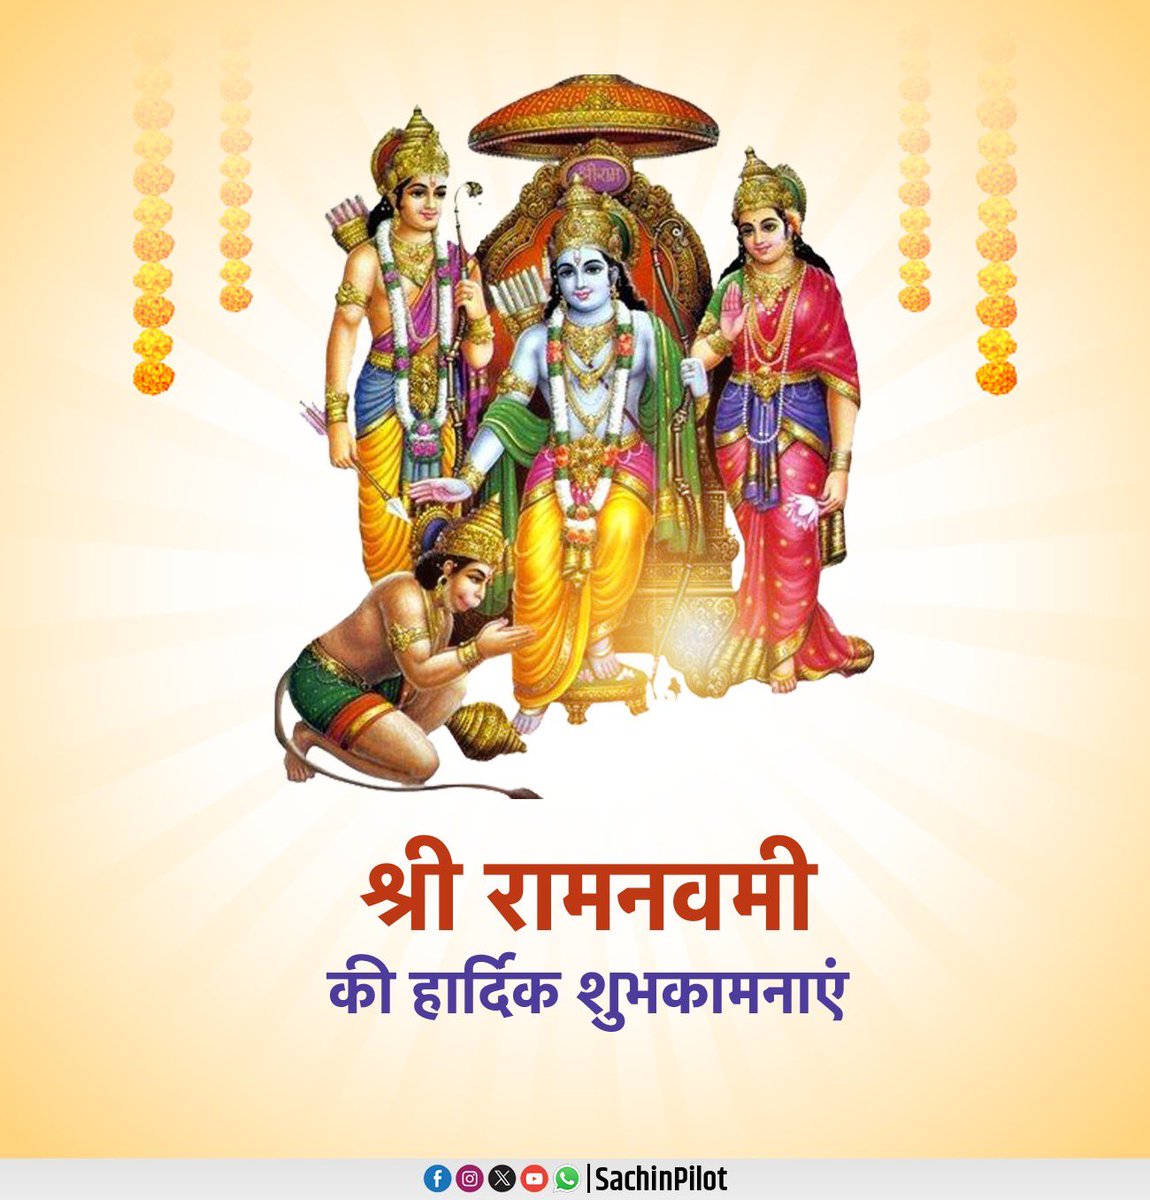 रामनवमी के शुभ अवसर पर हार्दिक शुभकामनाएं।